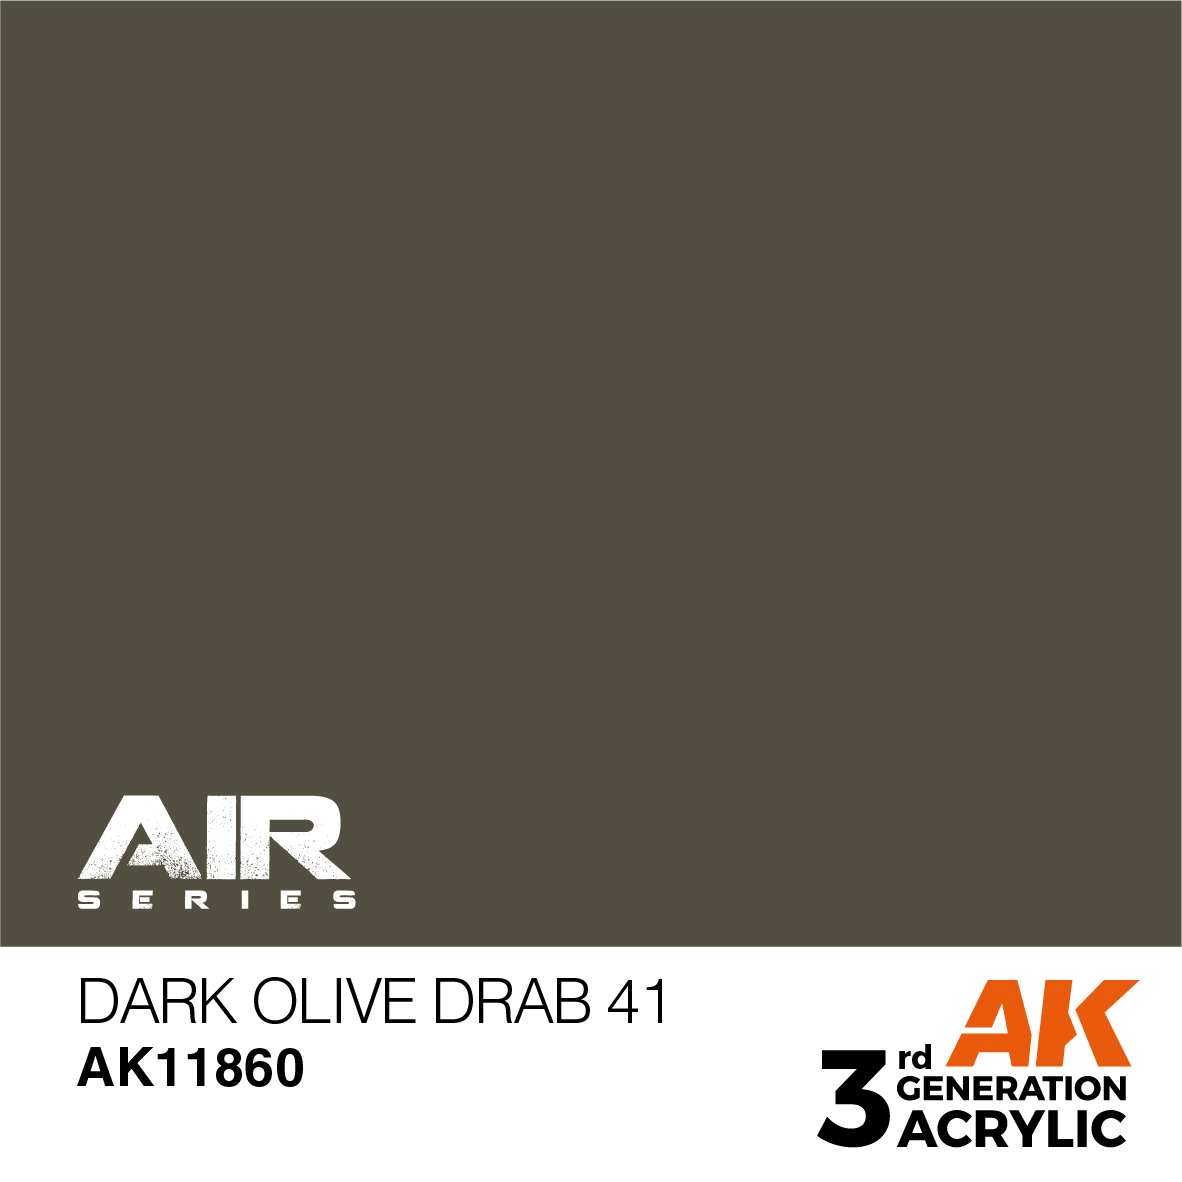 Dark Olive Drab 41 – AIR